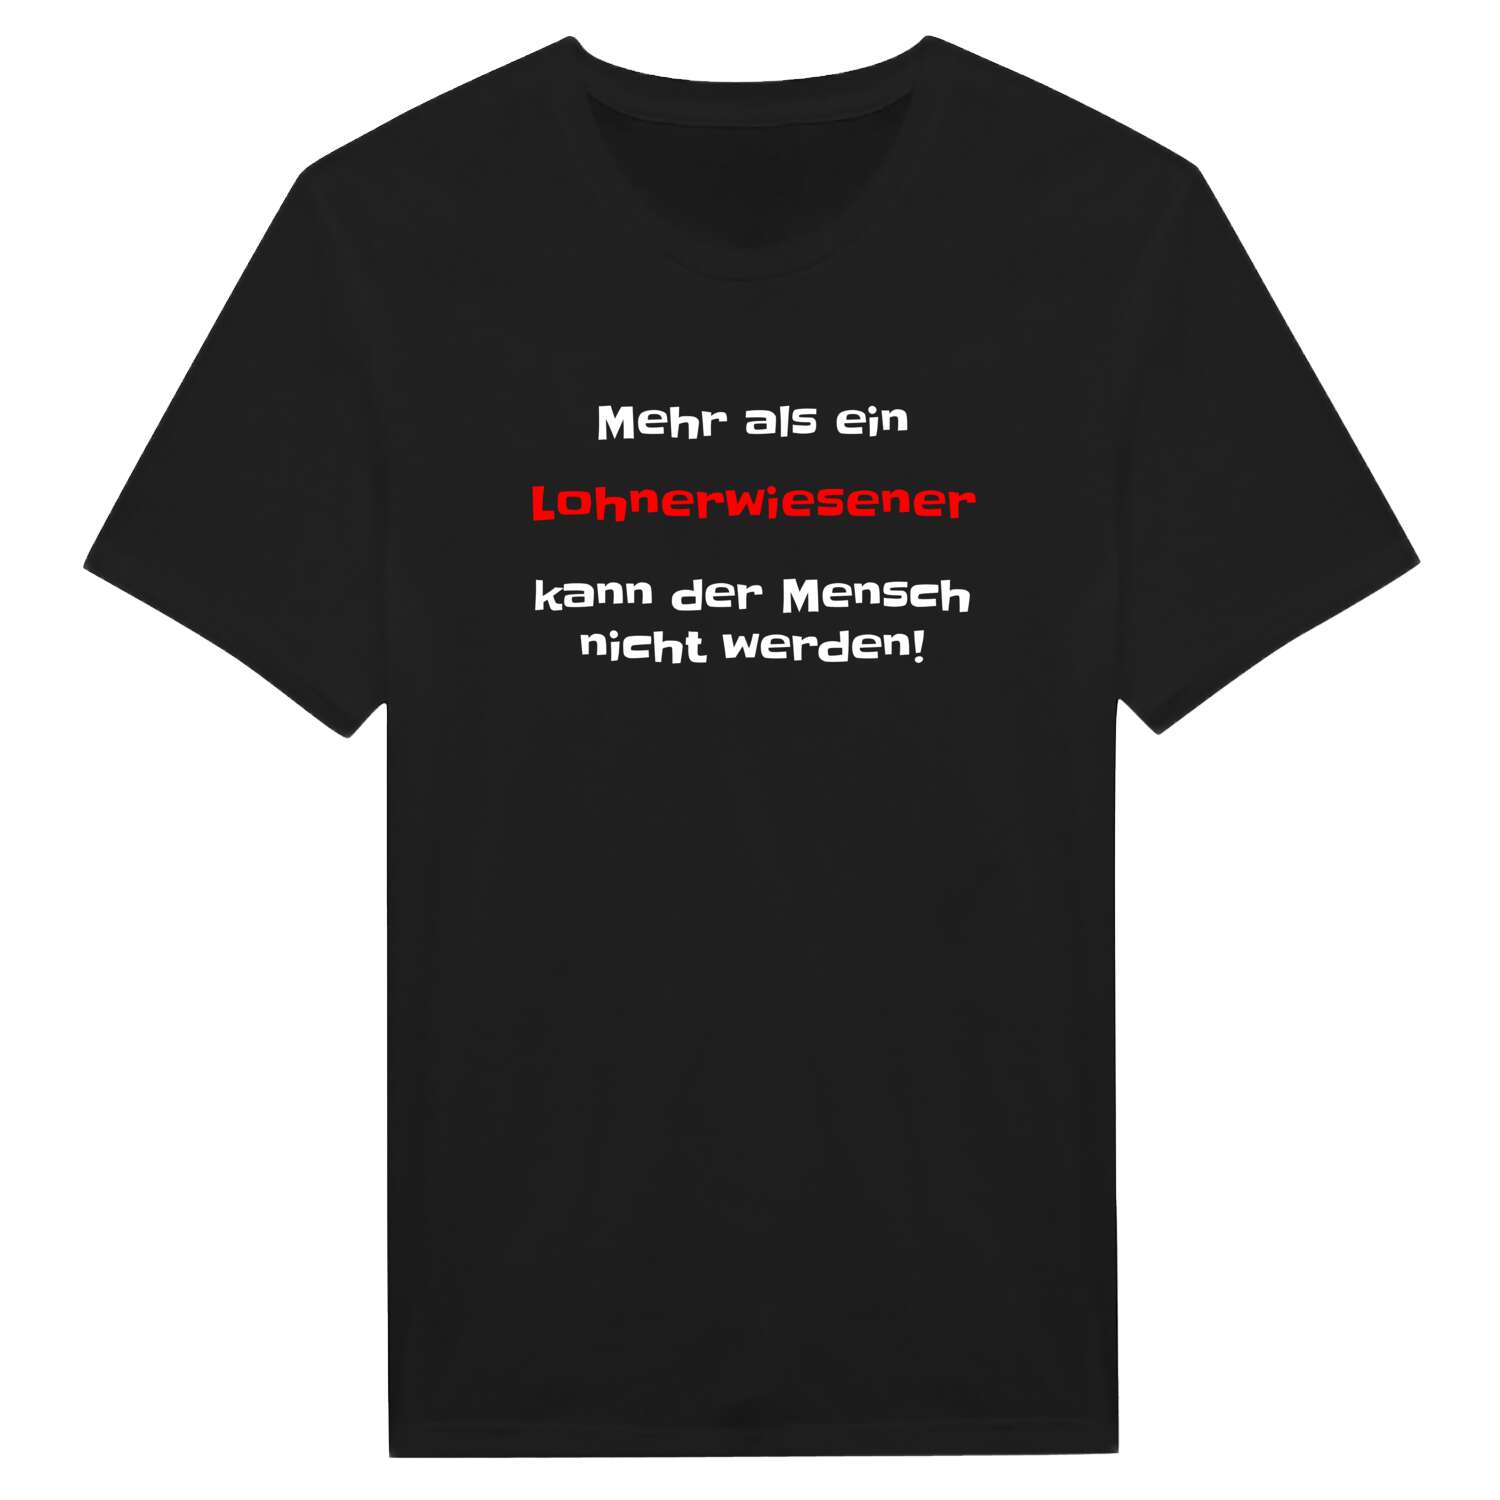 Lohnerwiesen T-Shirt »Mehr als ein«